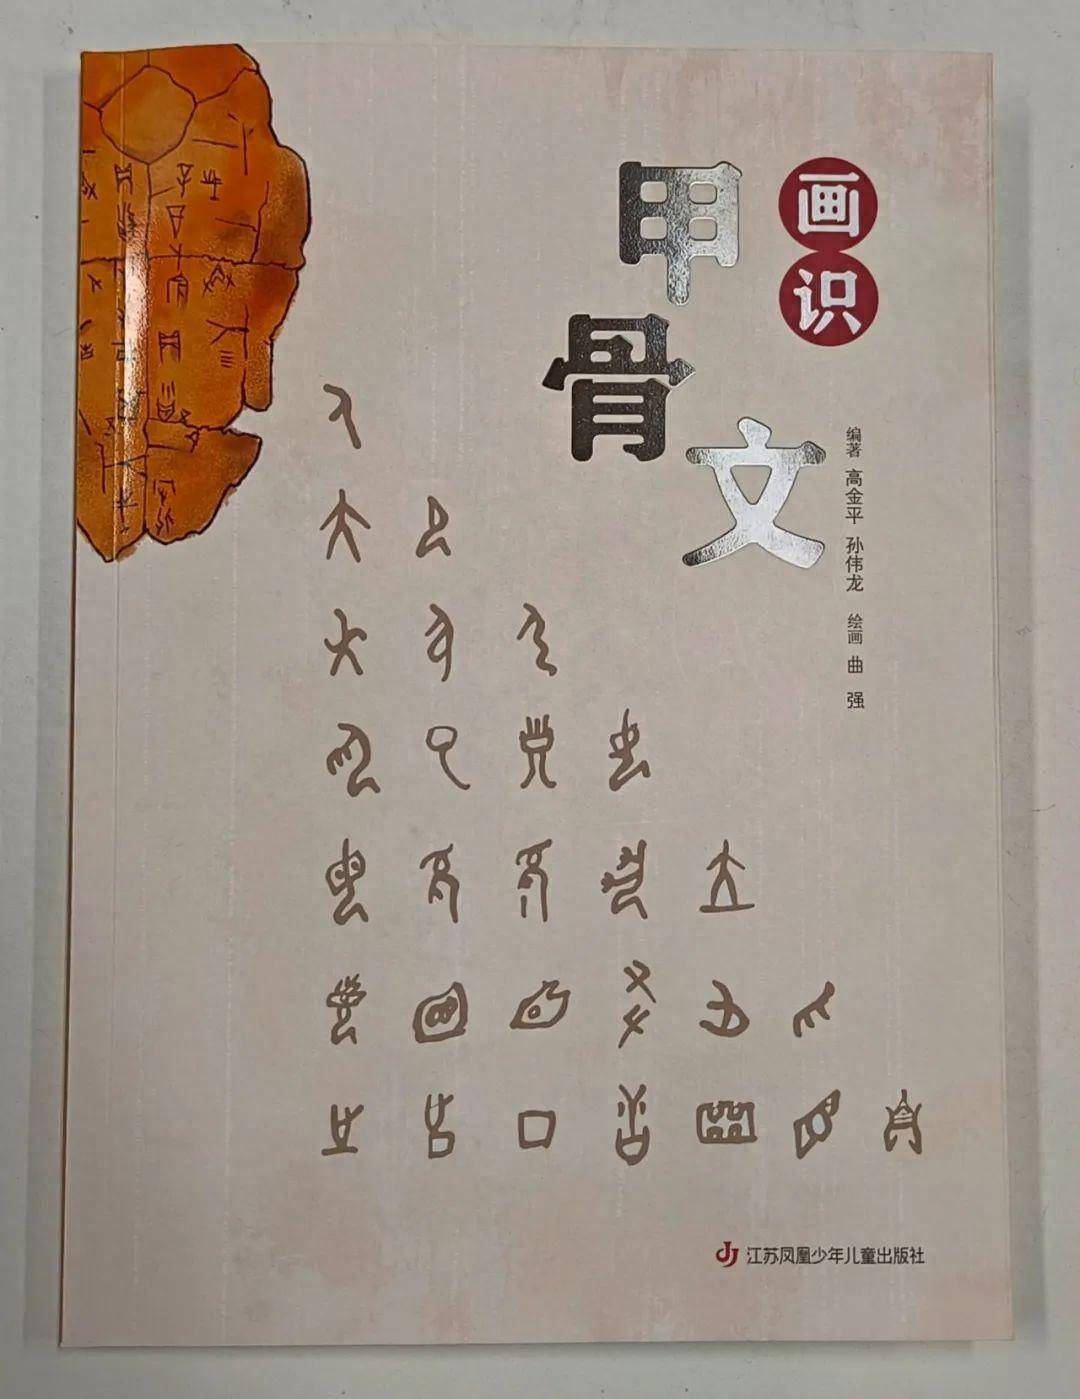 近日,擅长甲骨文书法的松江书法家高金平将素日研究结集付梓,出版了一